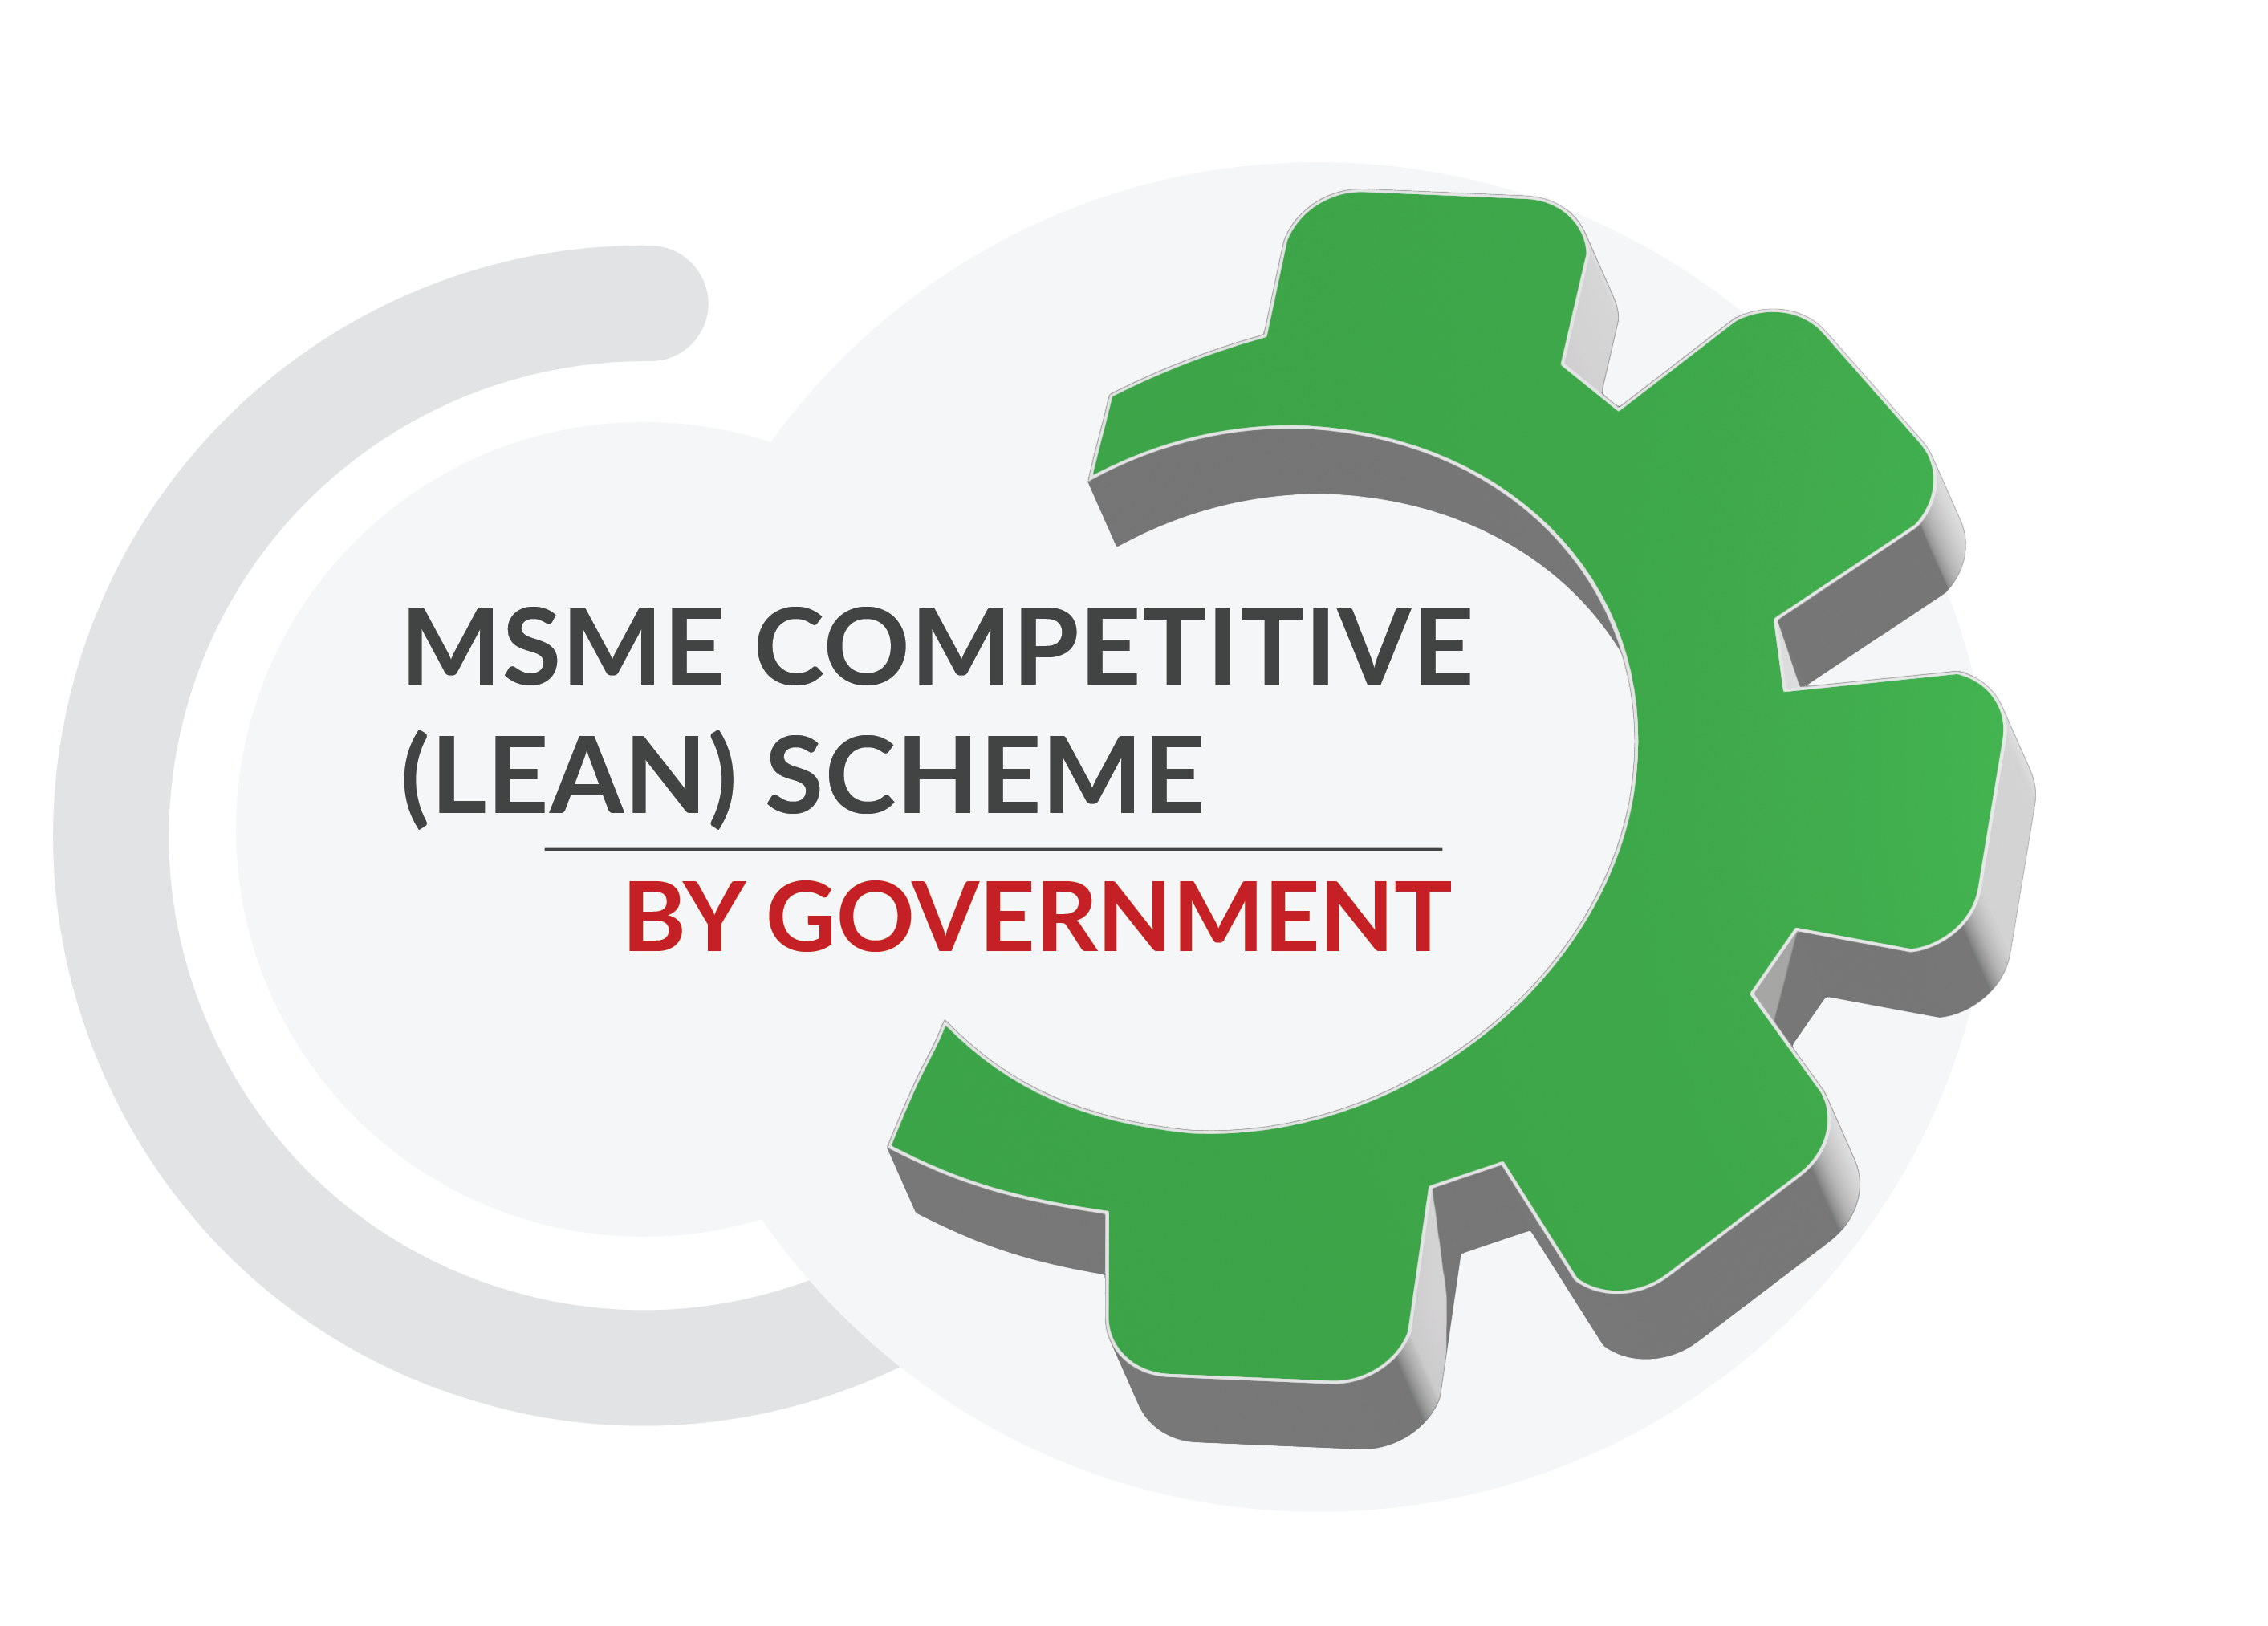 Lean MSME Scheme